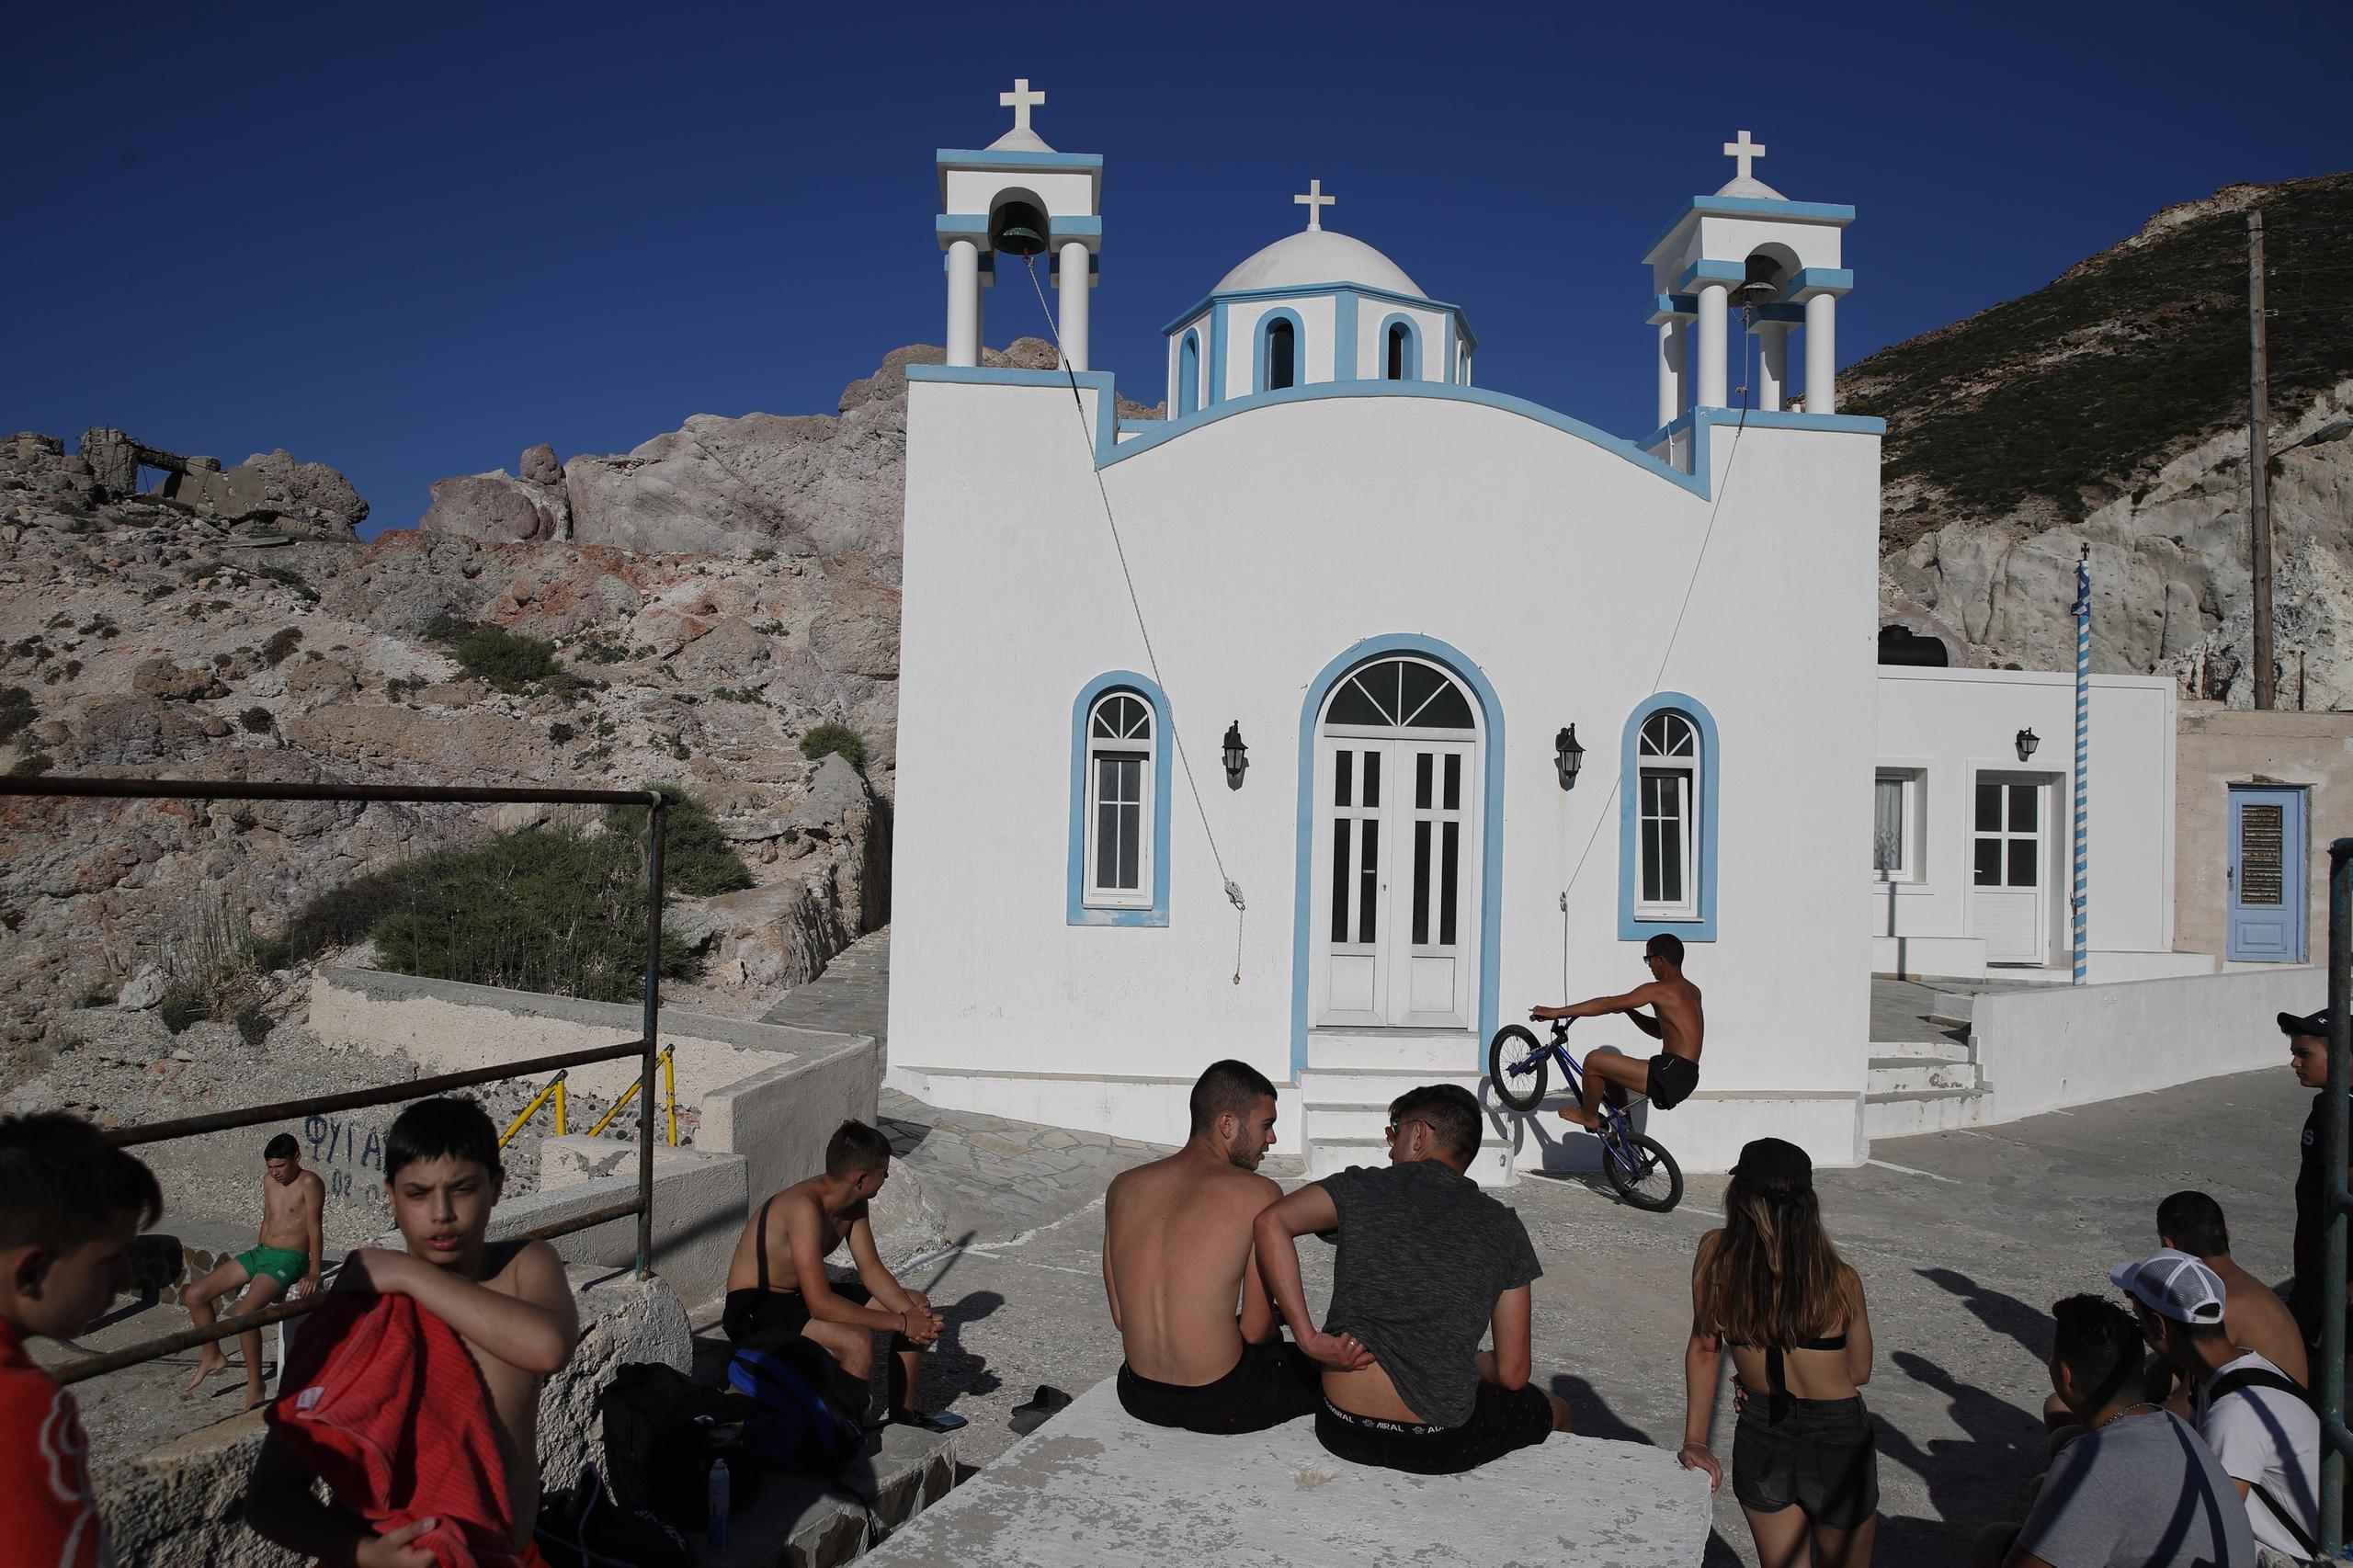 Niños y jóvenes reunidos ante una iglesia ortodoxa griega en la isla de Milos, en el mar Egeo